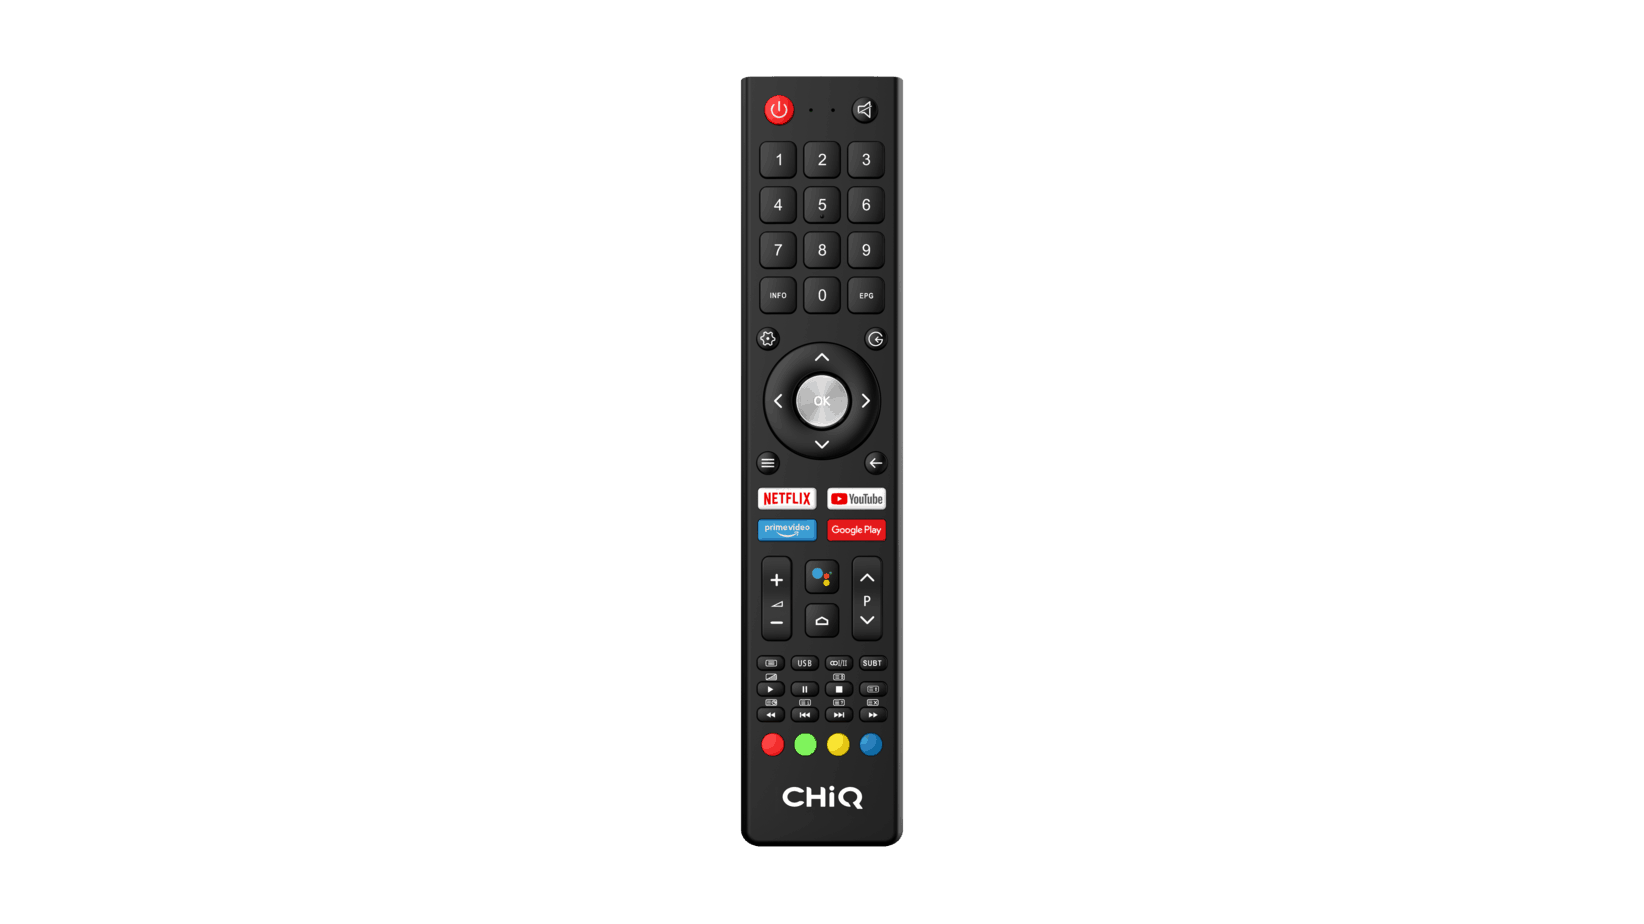  Fernbedienung des KAGIS 65 Zoll 4K UHD Smart
                                    TV - Netflix, Prime Video, Google Play & Youtube Schnellstart Tasten, Android Sprachassistent Taste